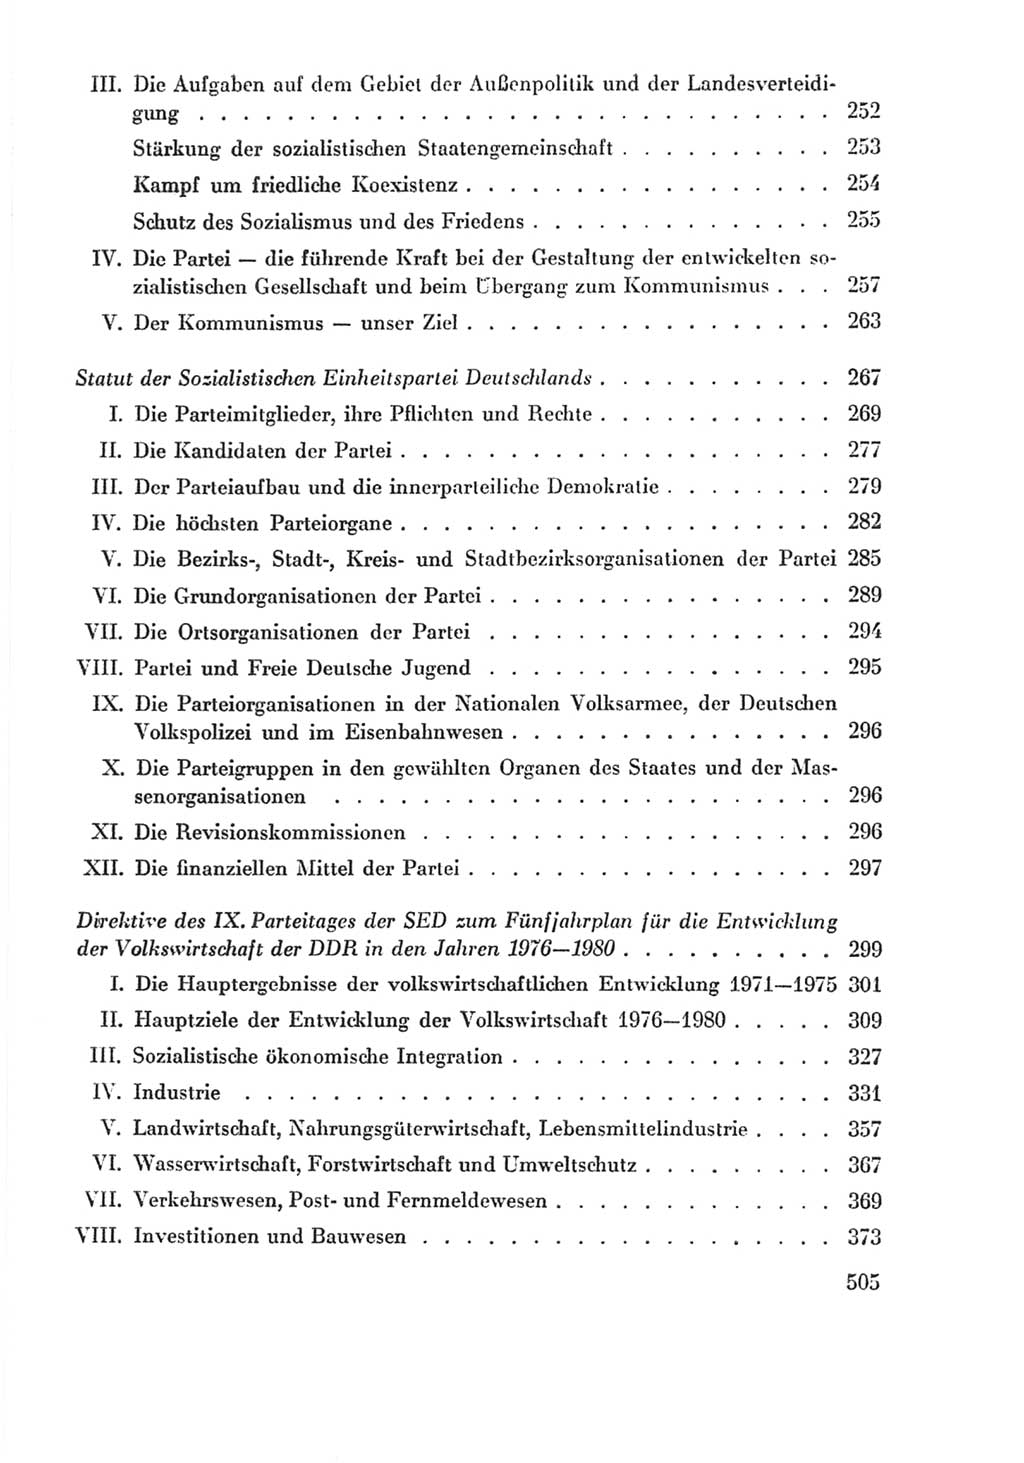 Protokoll der Verhandlungen des Ⅸ. Parteitages der Sozialistischen Einheitspartei Deutschlands (SED) [Deutsche Demokratische Republik (DDR)] 1976, Band 2, Seite 505 (Prot. Verh. Ⅸ. PT SED DDR 1976, Bd. 2, S. 505)